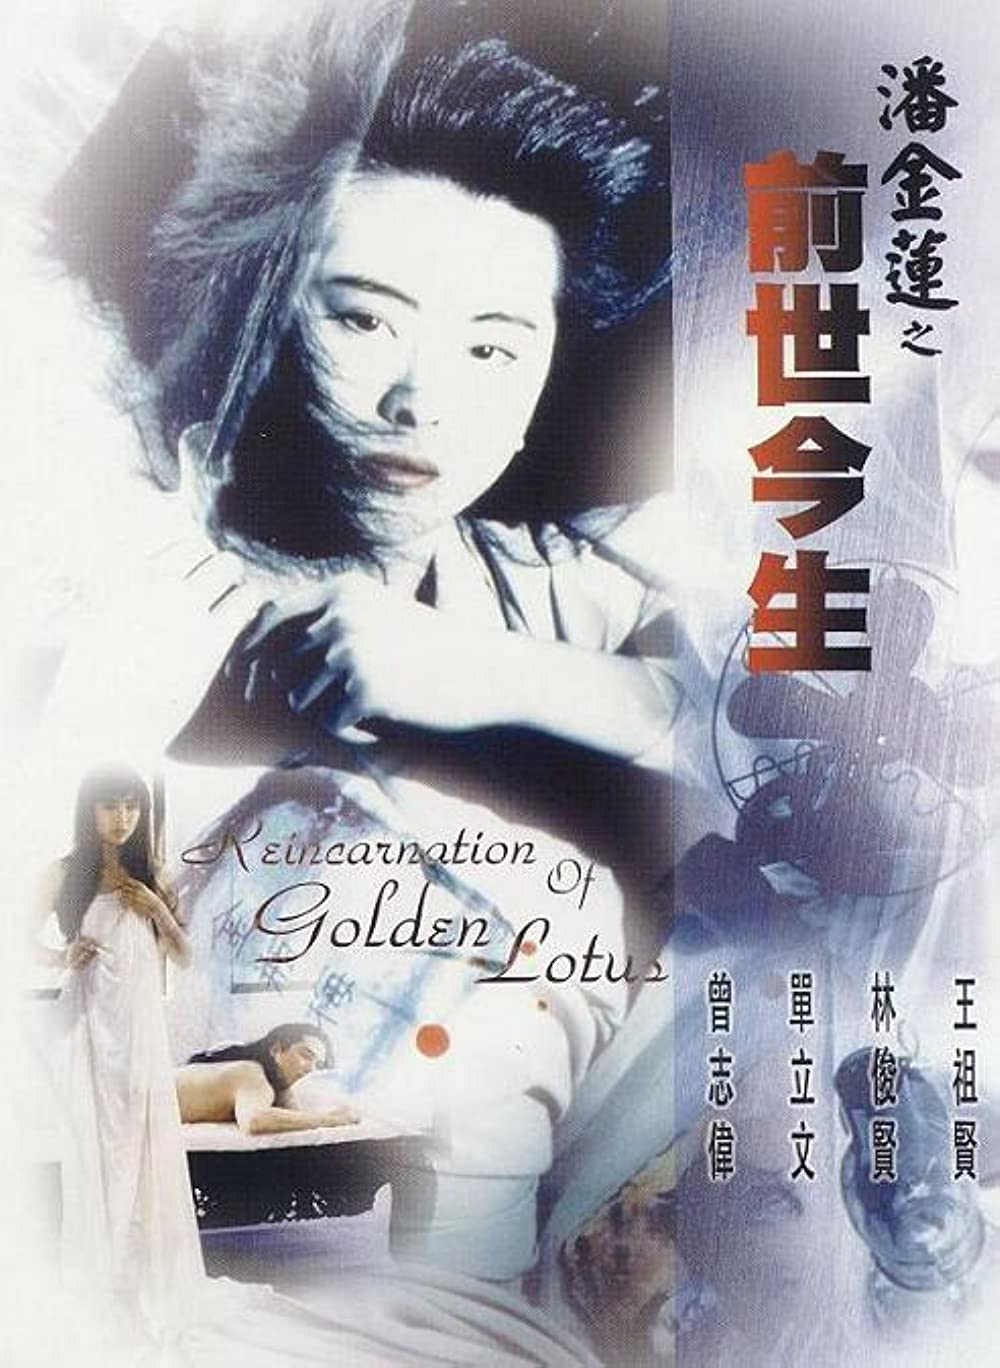 ดูหนังออนไลน์ฟรี The Reincarnation Of Golden Lotus (1989) อี้เหลียน คนหิ้วหัว